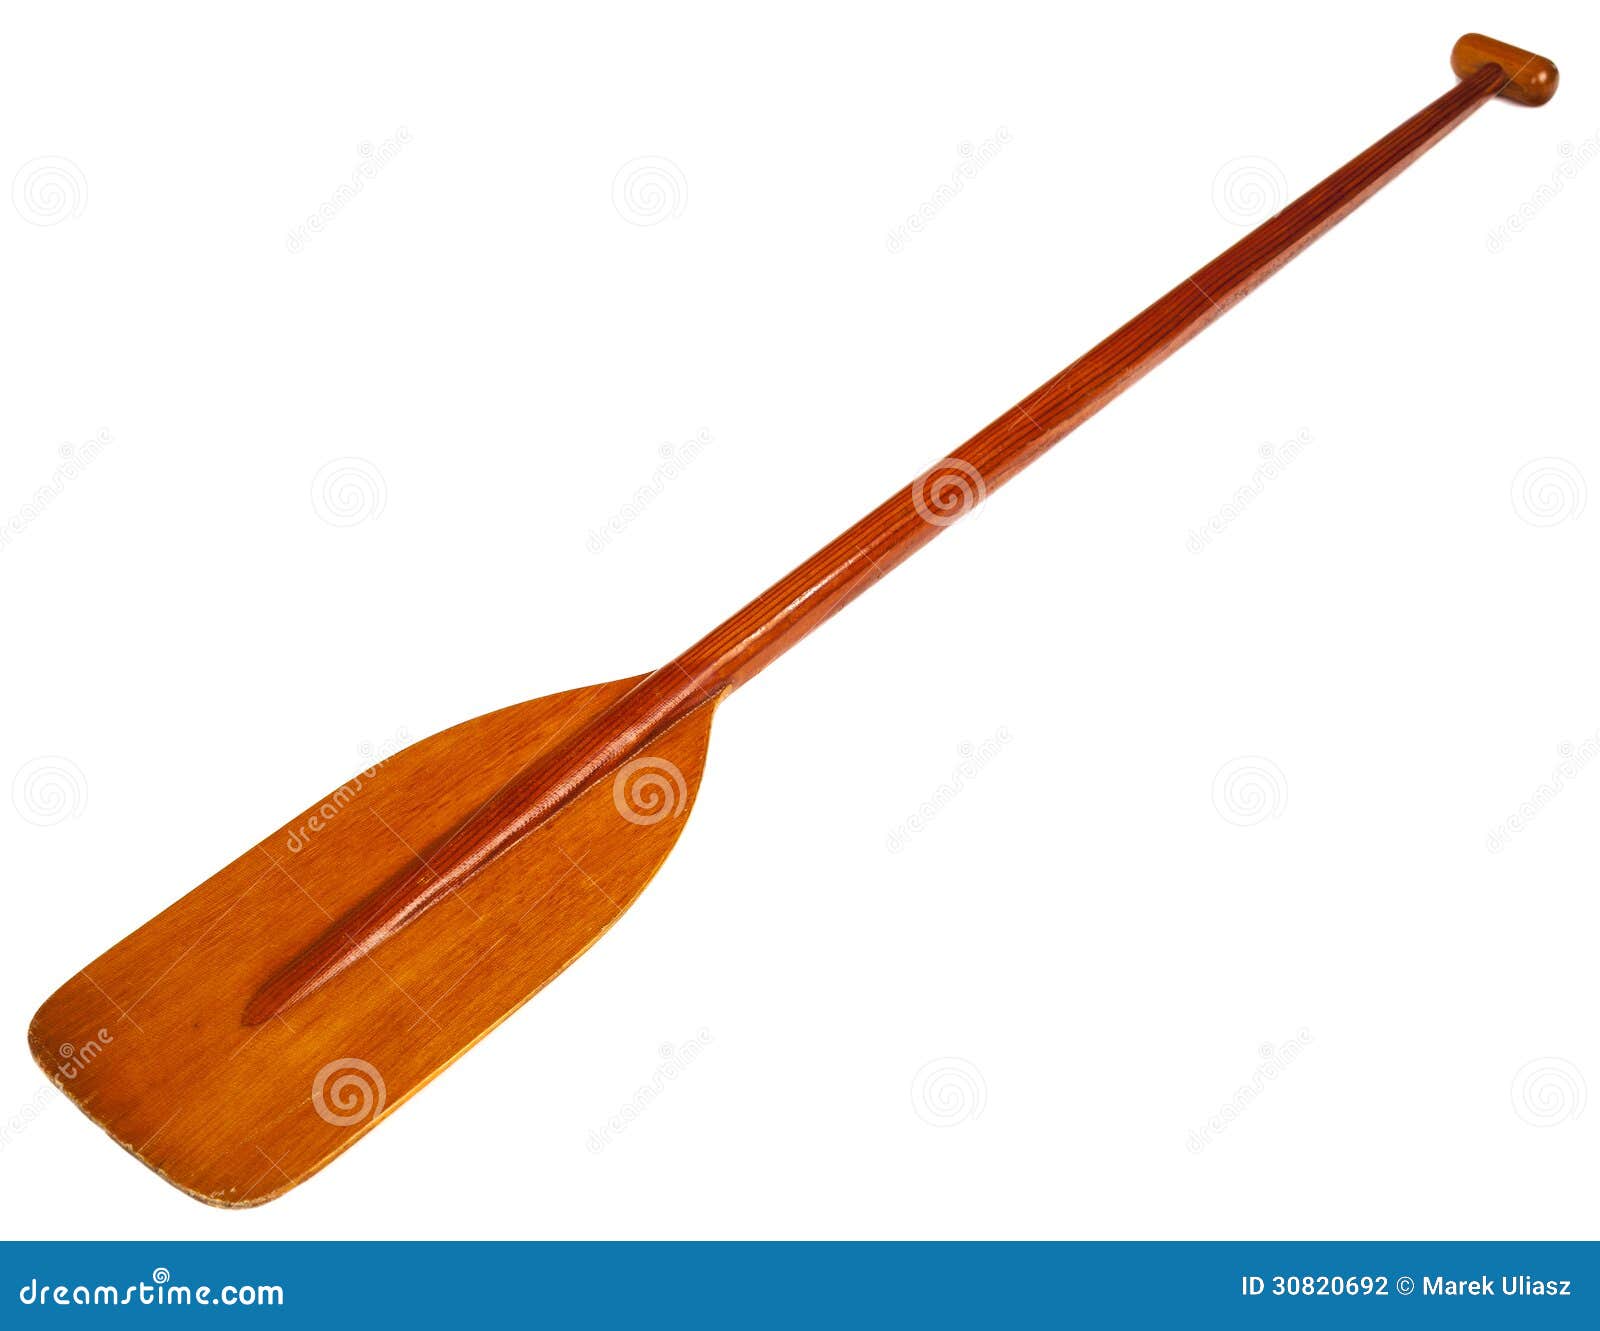 Wooden Canoe Paddle Stock Photography - Image: 30820692